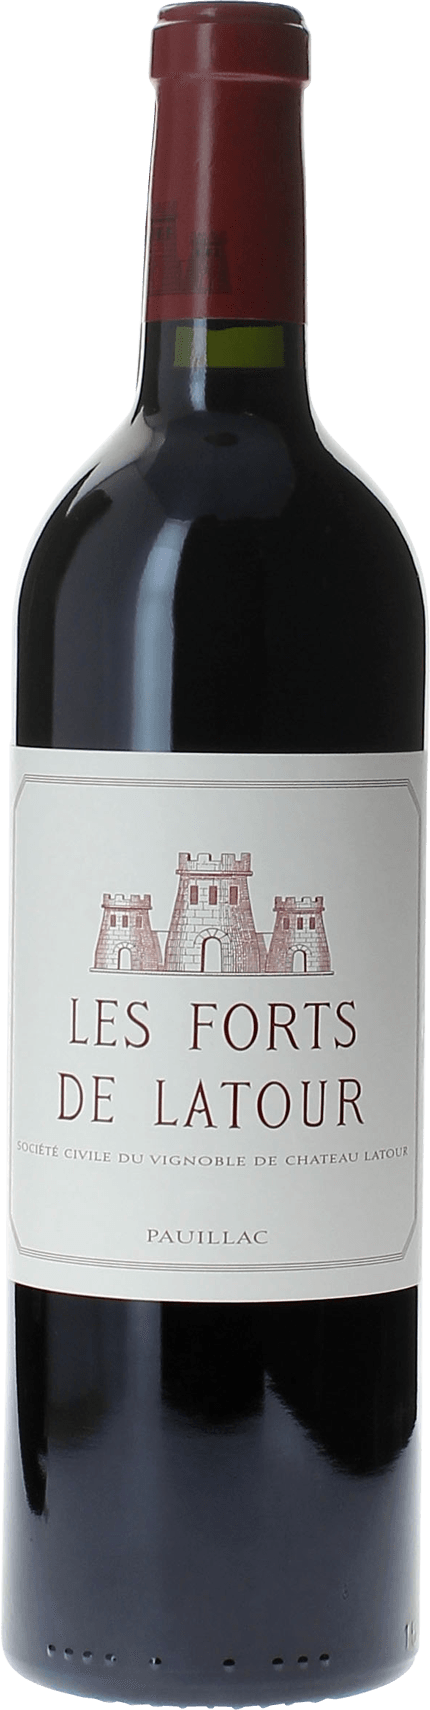 Les forts de latour 2007 2me vin de LATOUR Pauillac, Bordeaux rouge